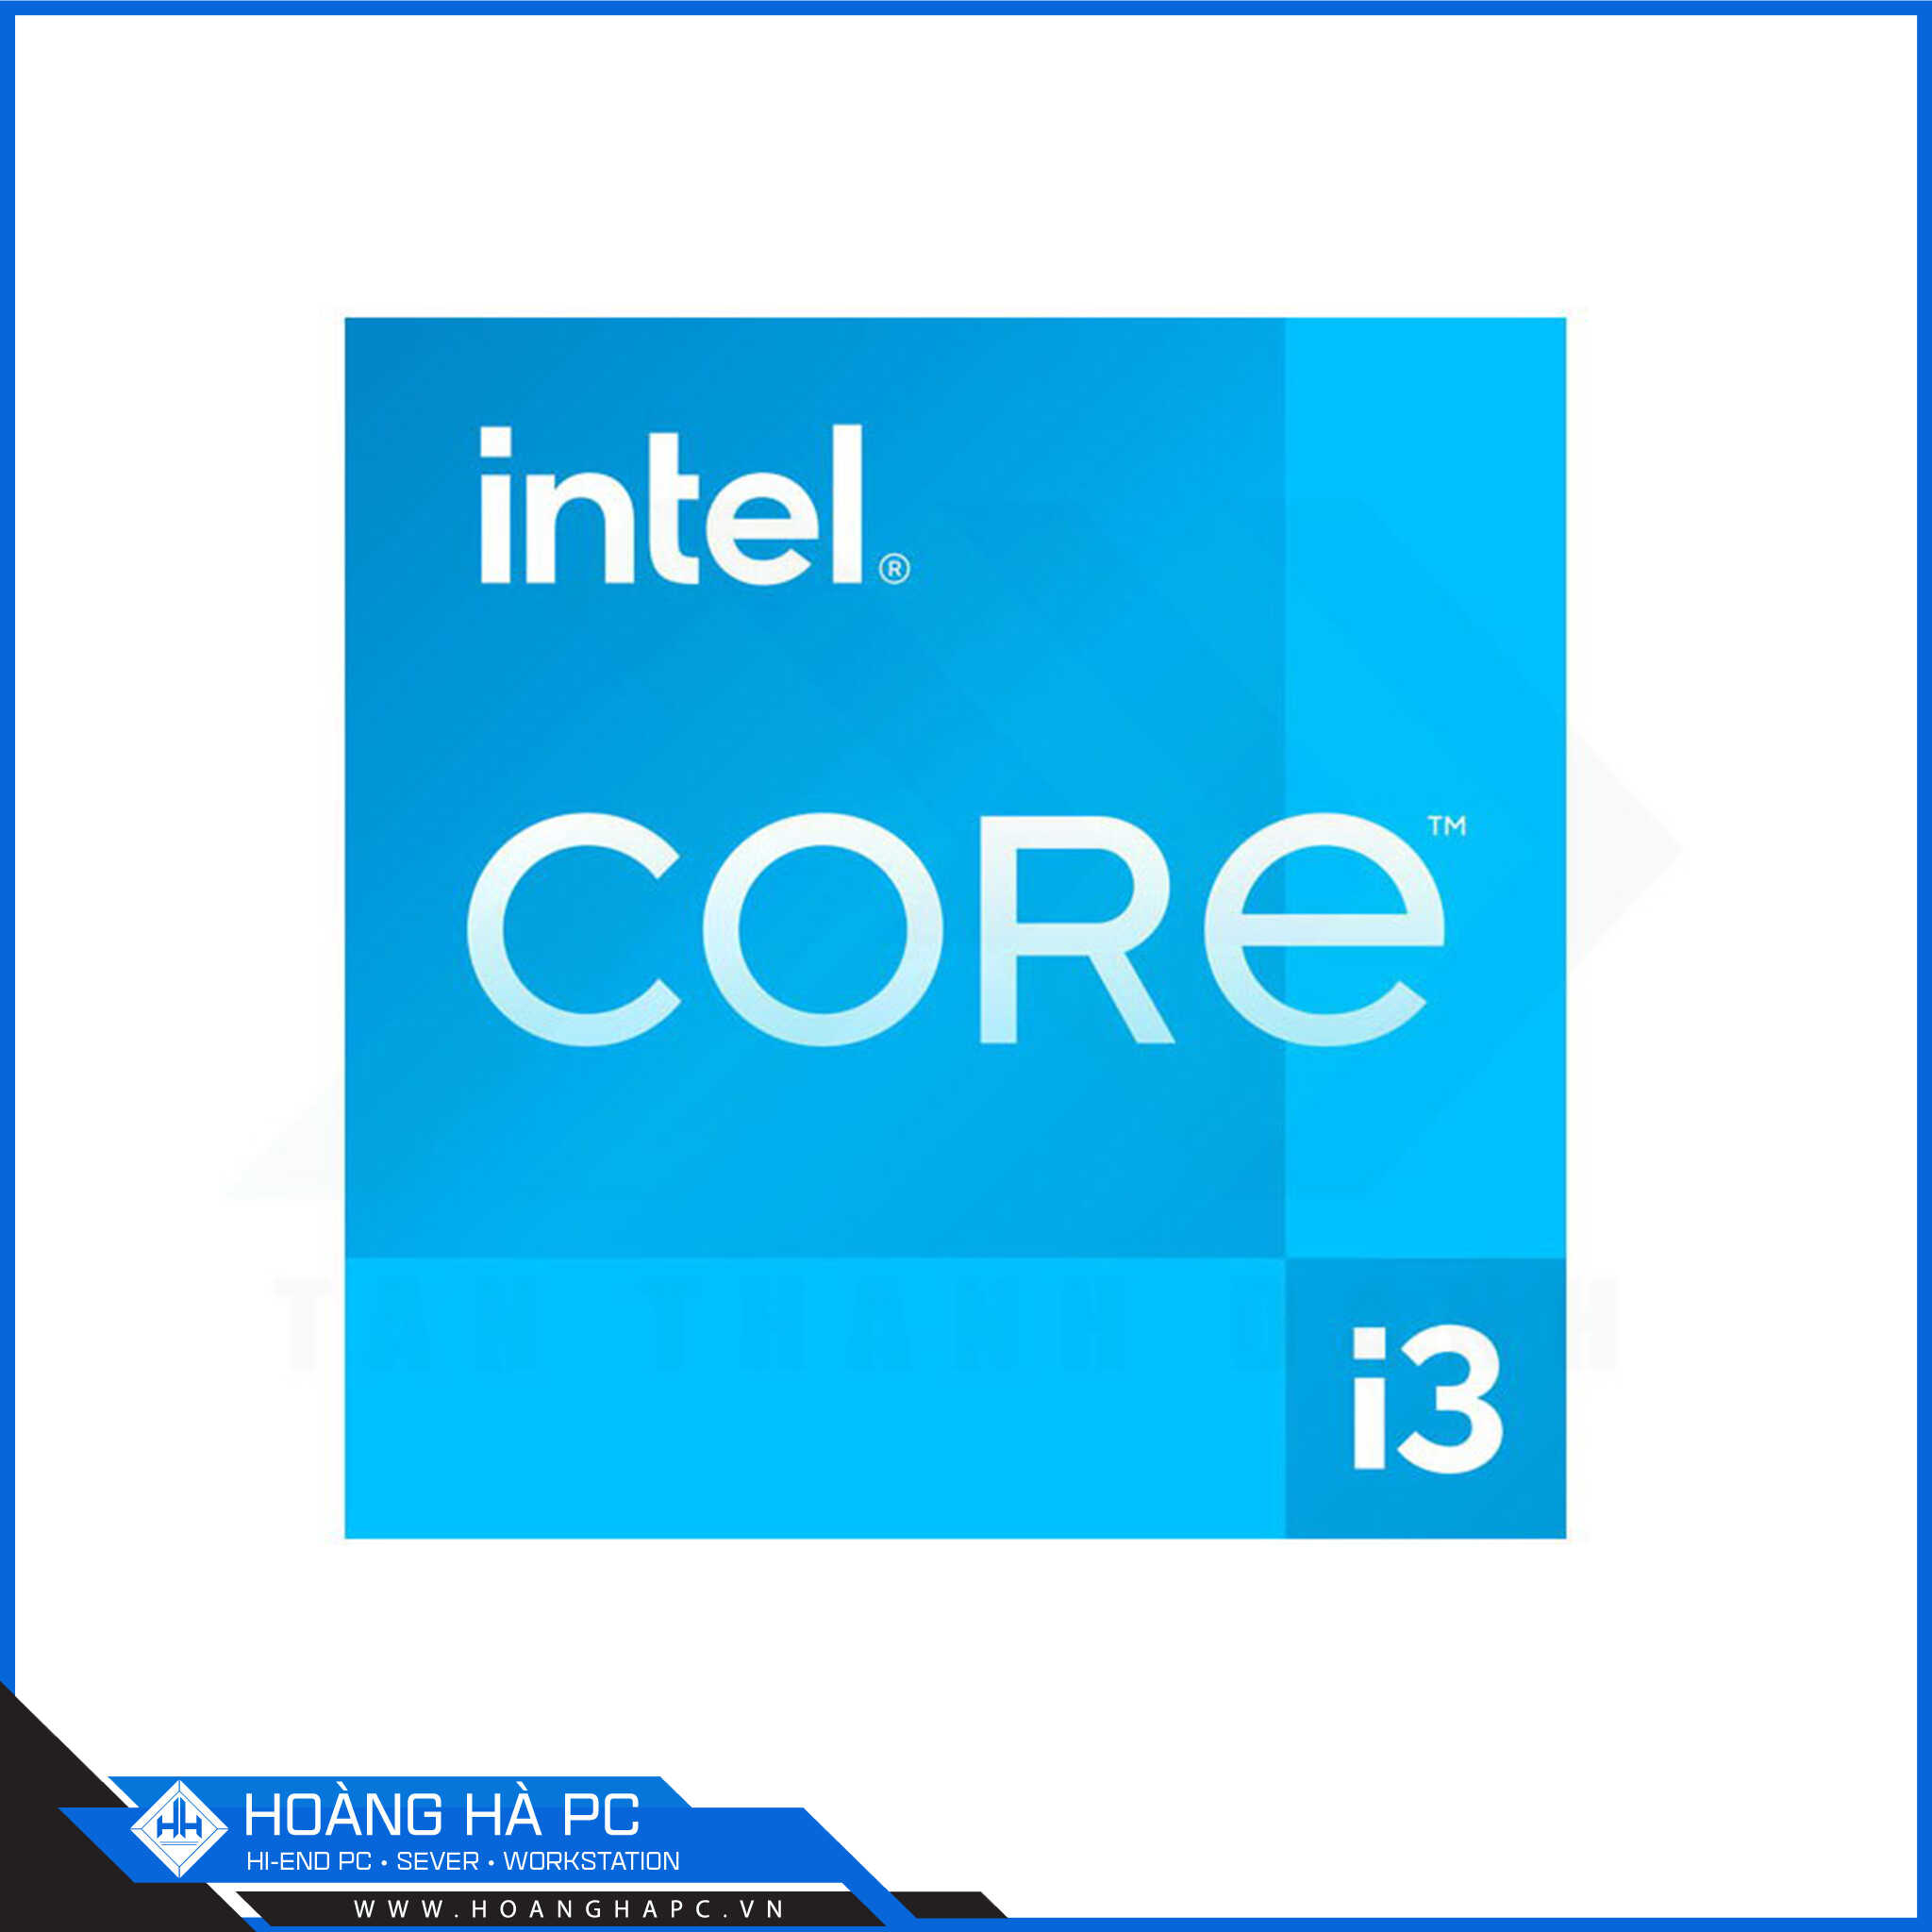 Hoàng Hà PC cung cấp Core i3 chính hãng, chất lượng cao